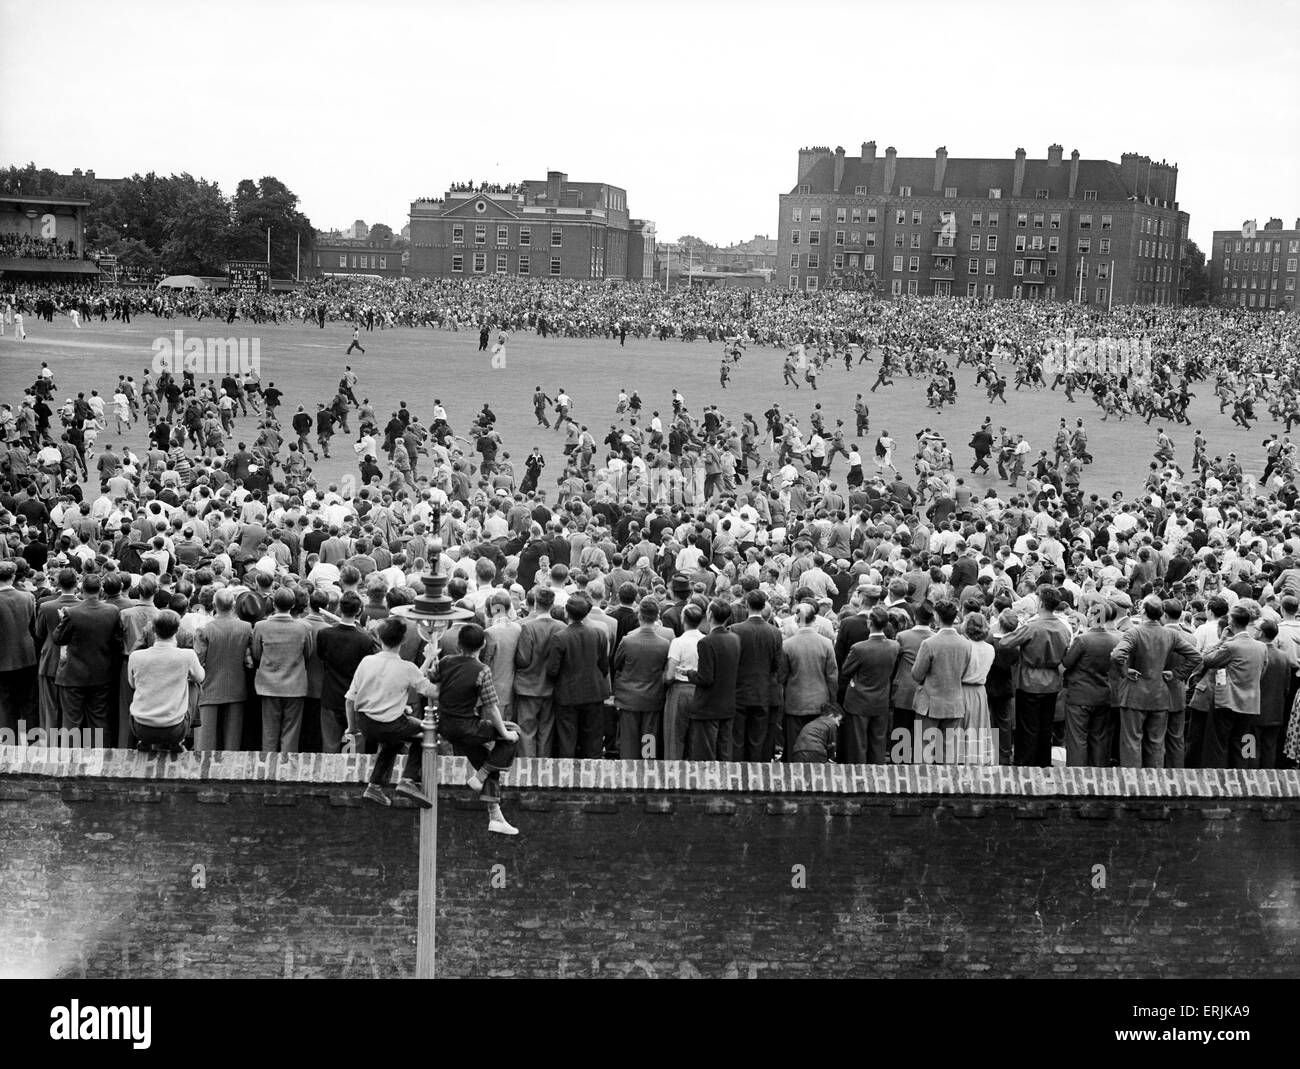 Inghilterra v Australia quinta prova corrisponde al ovale per le ceneri. La folla rush su il passo alla fine come si celebra l'Inghilterra del 1-0 vincere in serie. 19 agosto 1953. Foto Stock